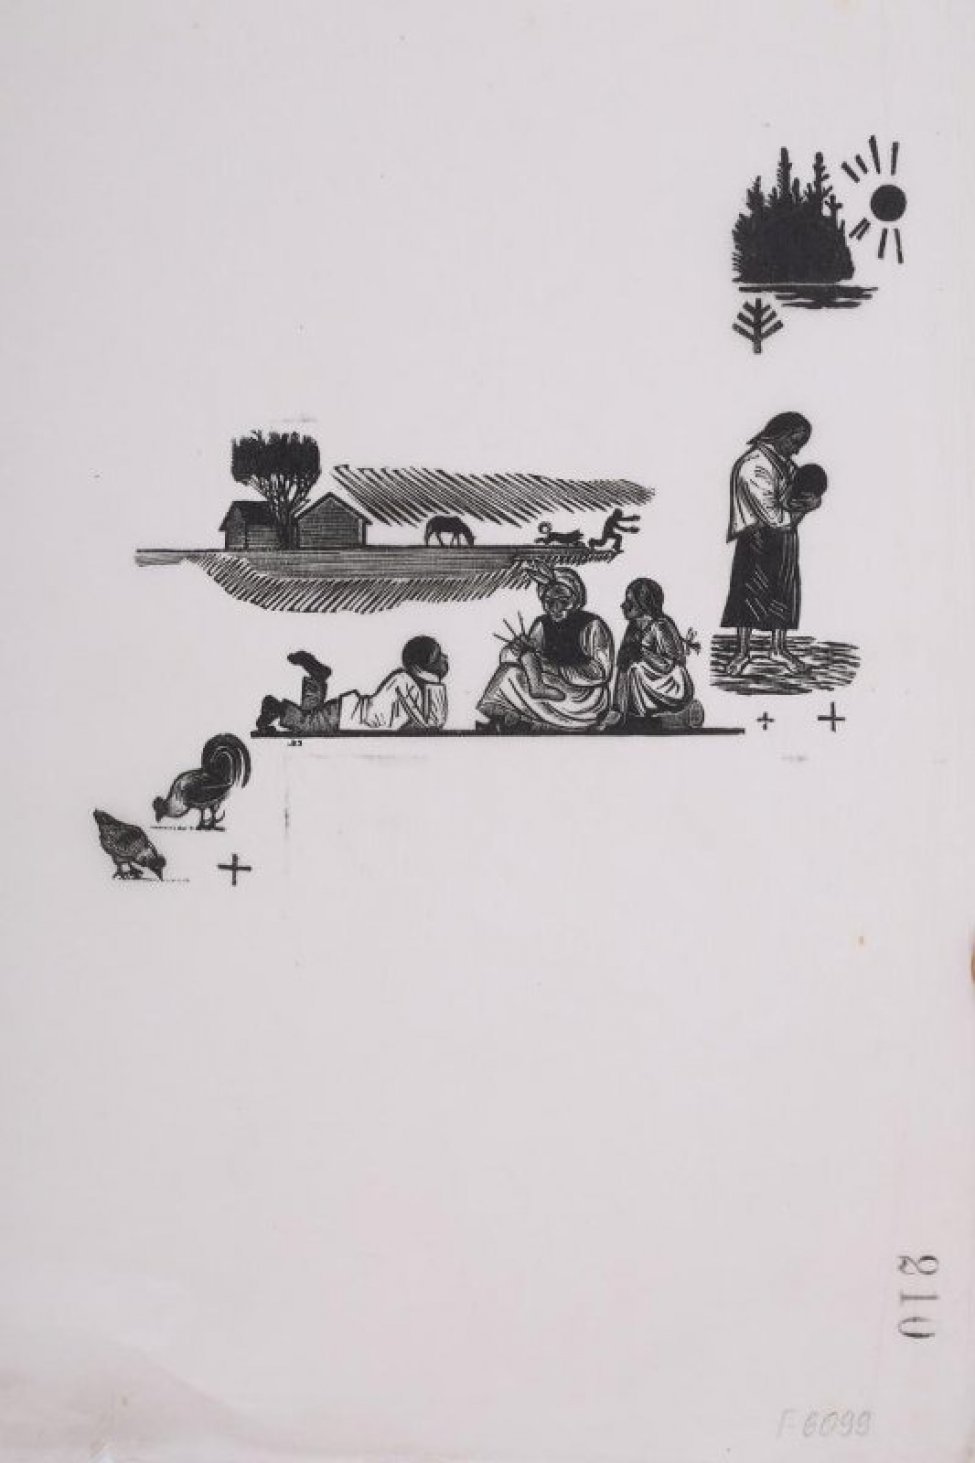 Изображен летний деревенский пейзаж с фигурками женщин,детей, животных.